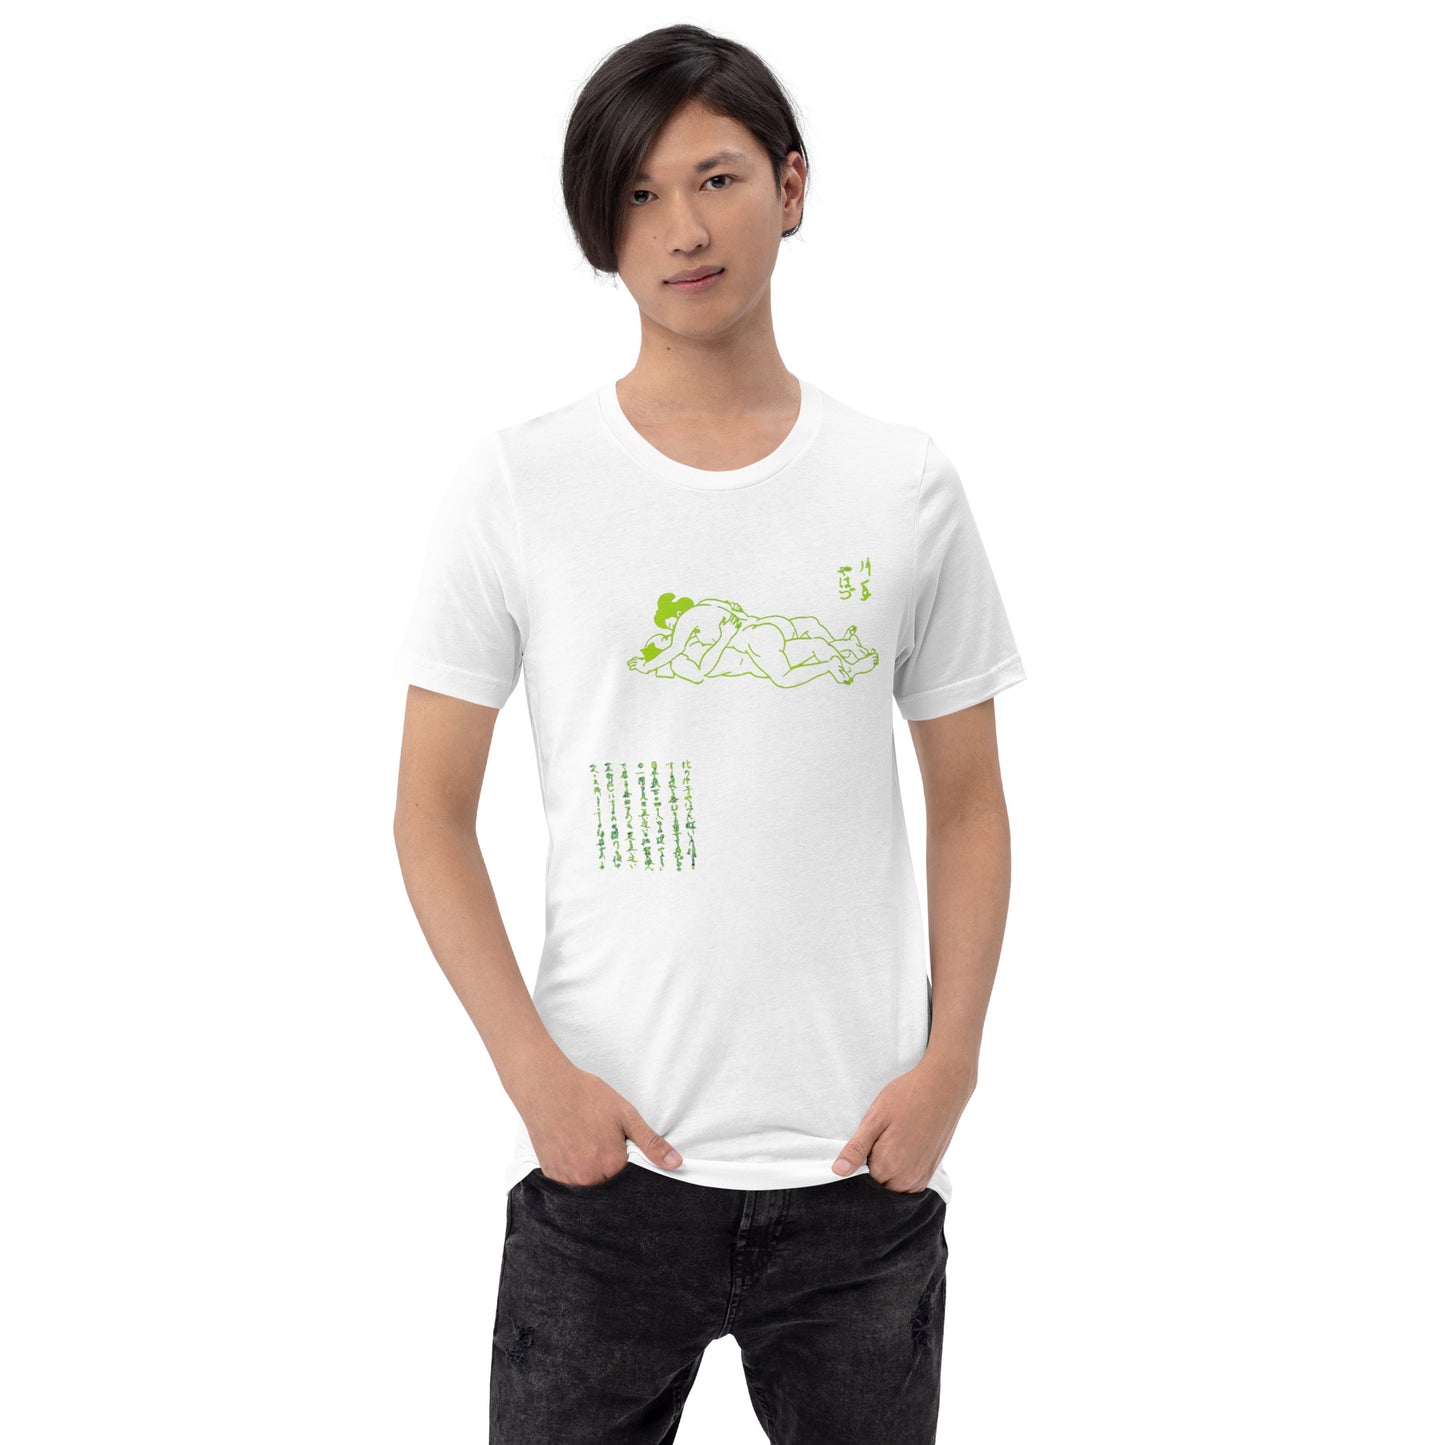 Unisex t-shirt "48 KATATE YAHAZU" White